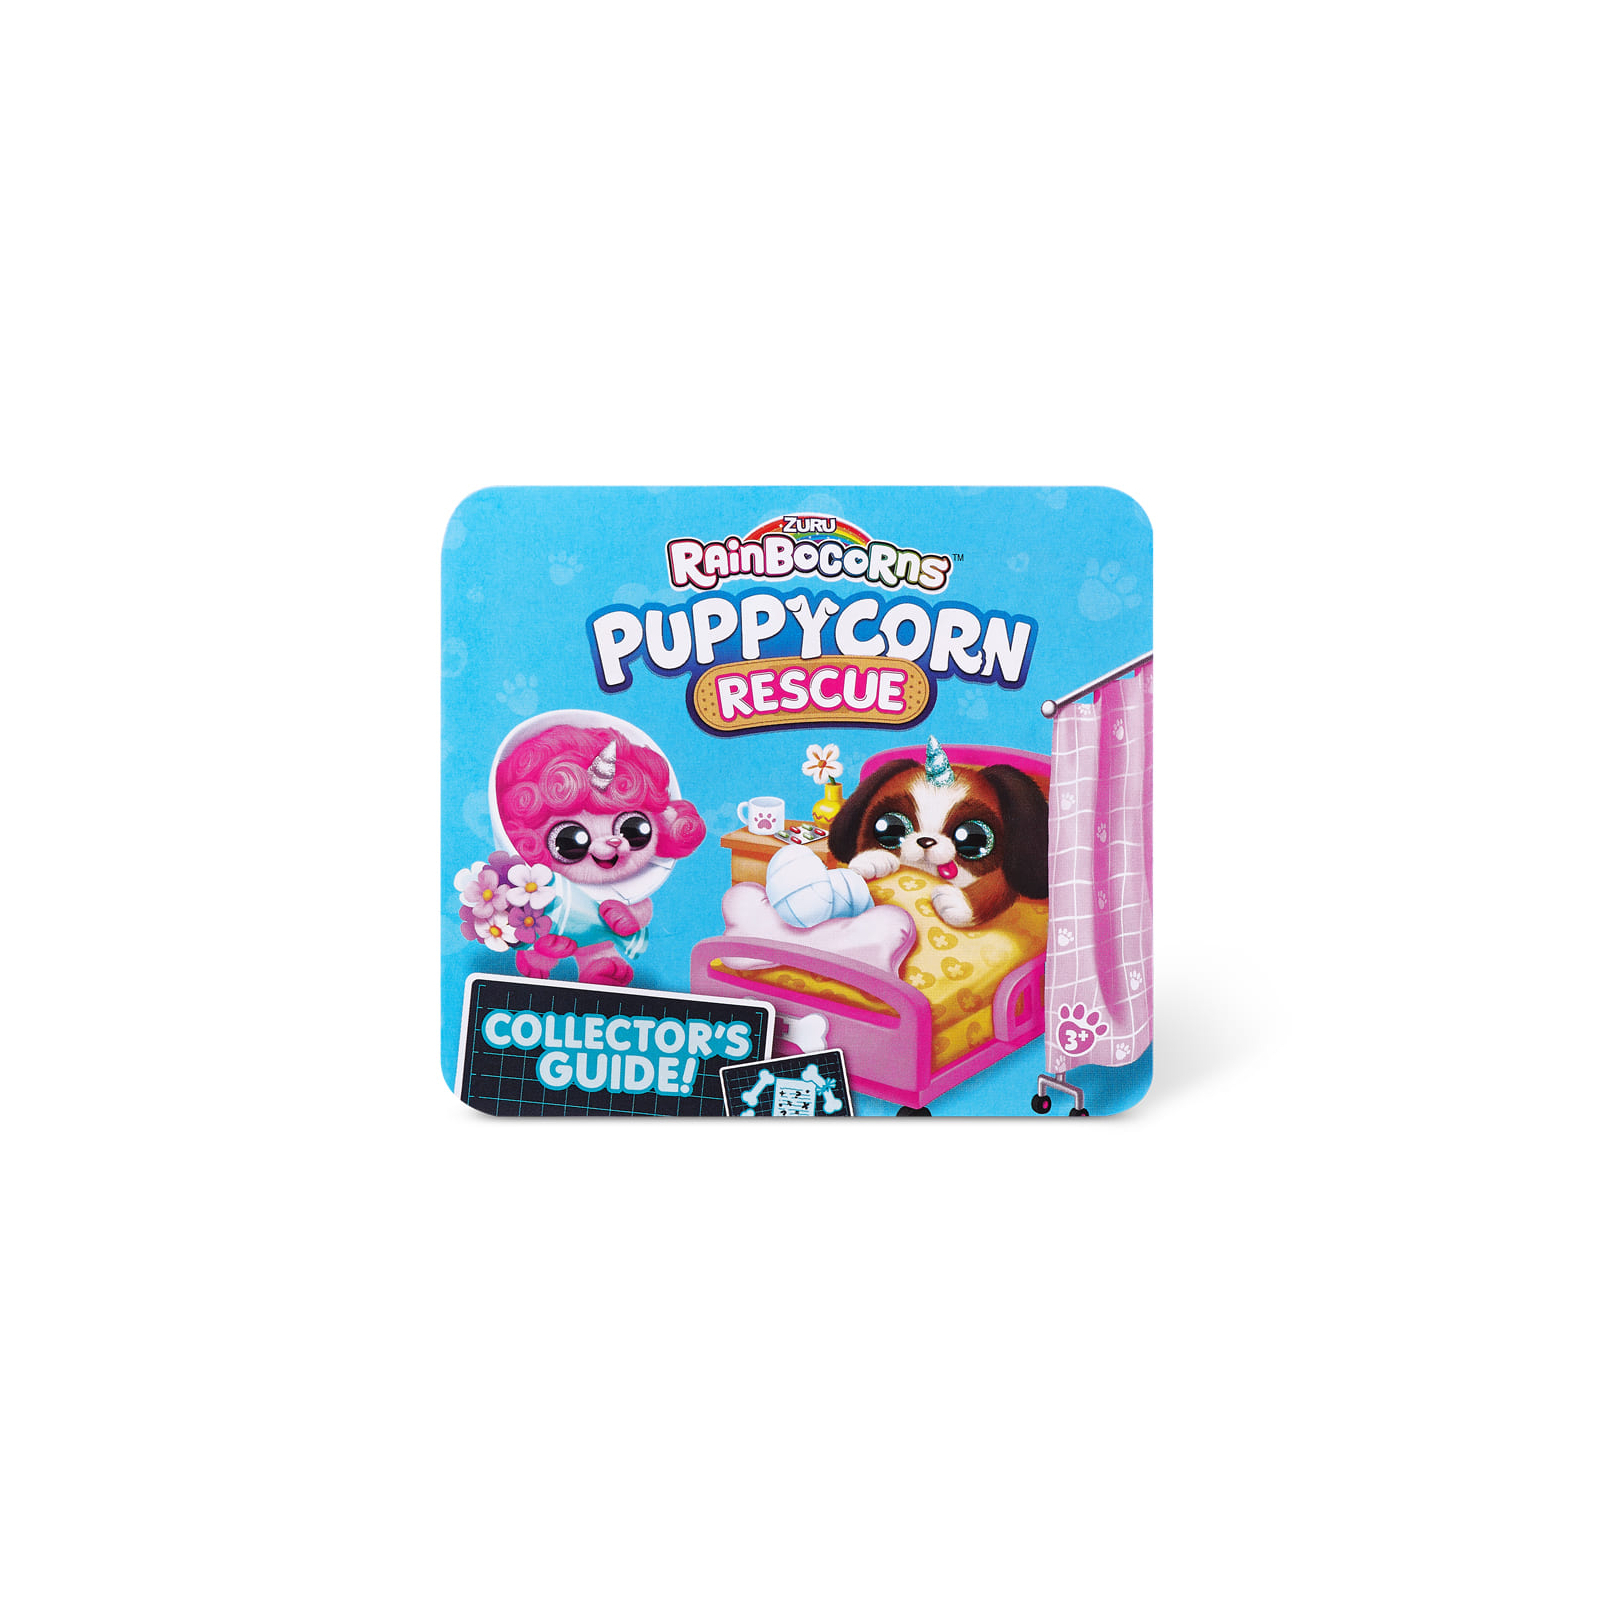 Мягкая игрушка Rainbocorns сюрприз D серия Puppycorn Rescue (9261D) изображение 13